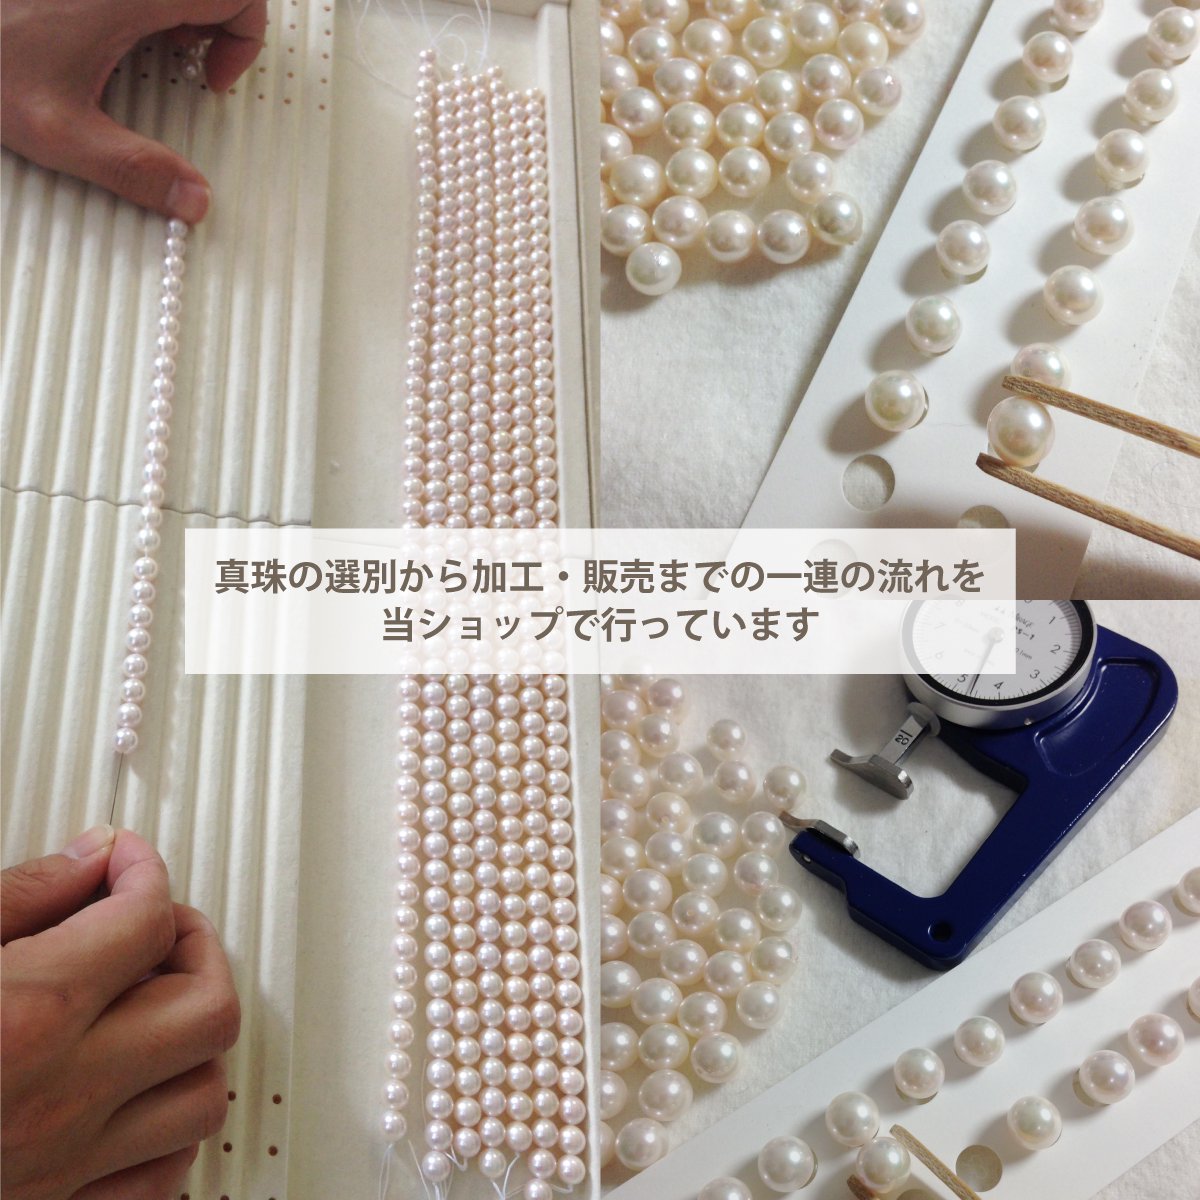 Basic quality》あこや真珠 ネックレス・イヤリングセット 7.5ー8.0mm